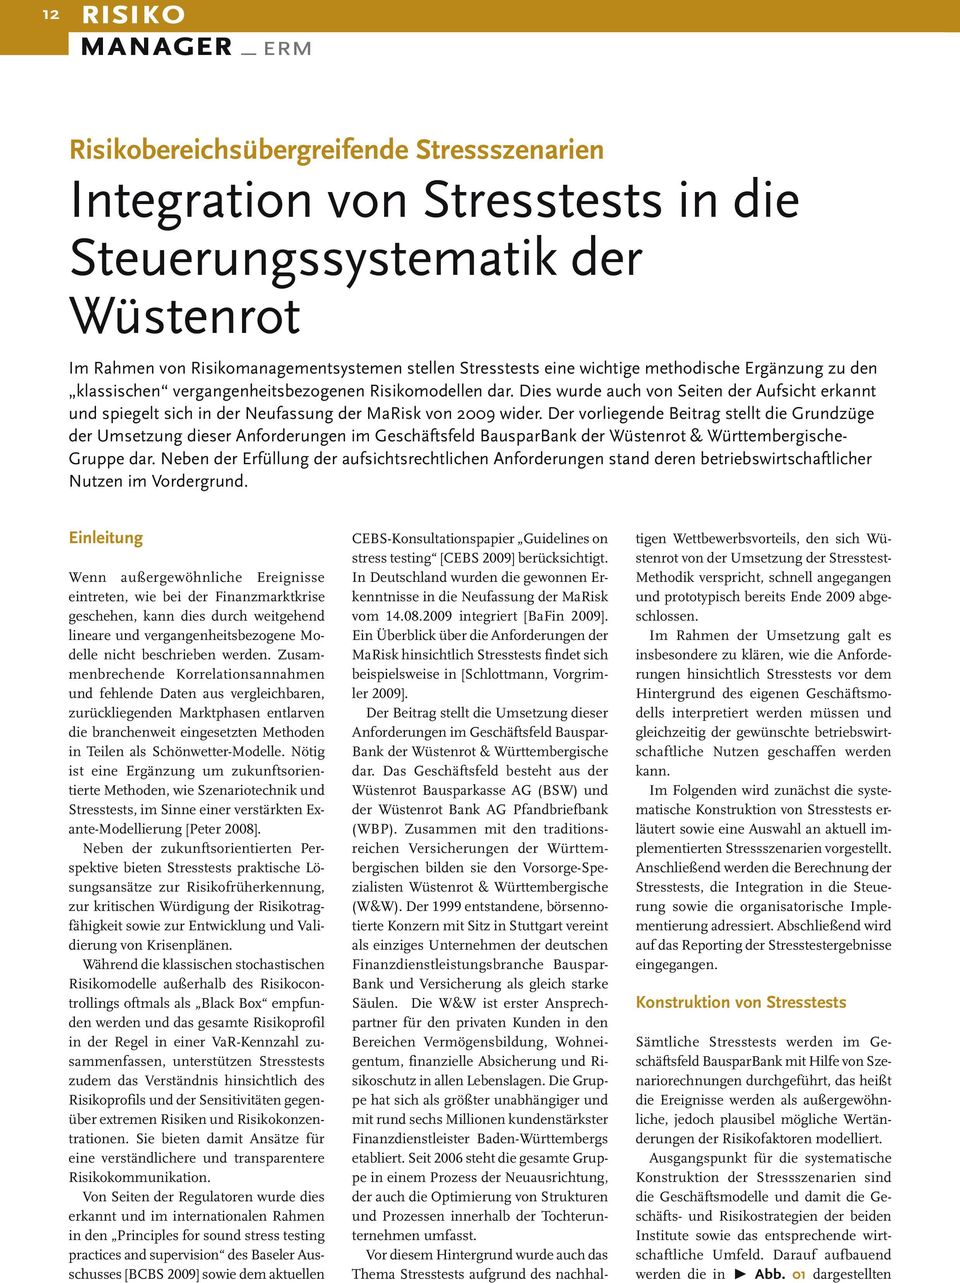 Der vorliegende Beitrag stellt die Grundzüge der Umsetzung dieser Anforderungen im Geschäftsfeld BausparBank der Wüstenrot & Württembergische- Gruppe dar.